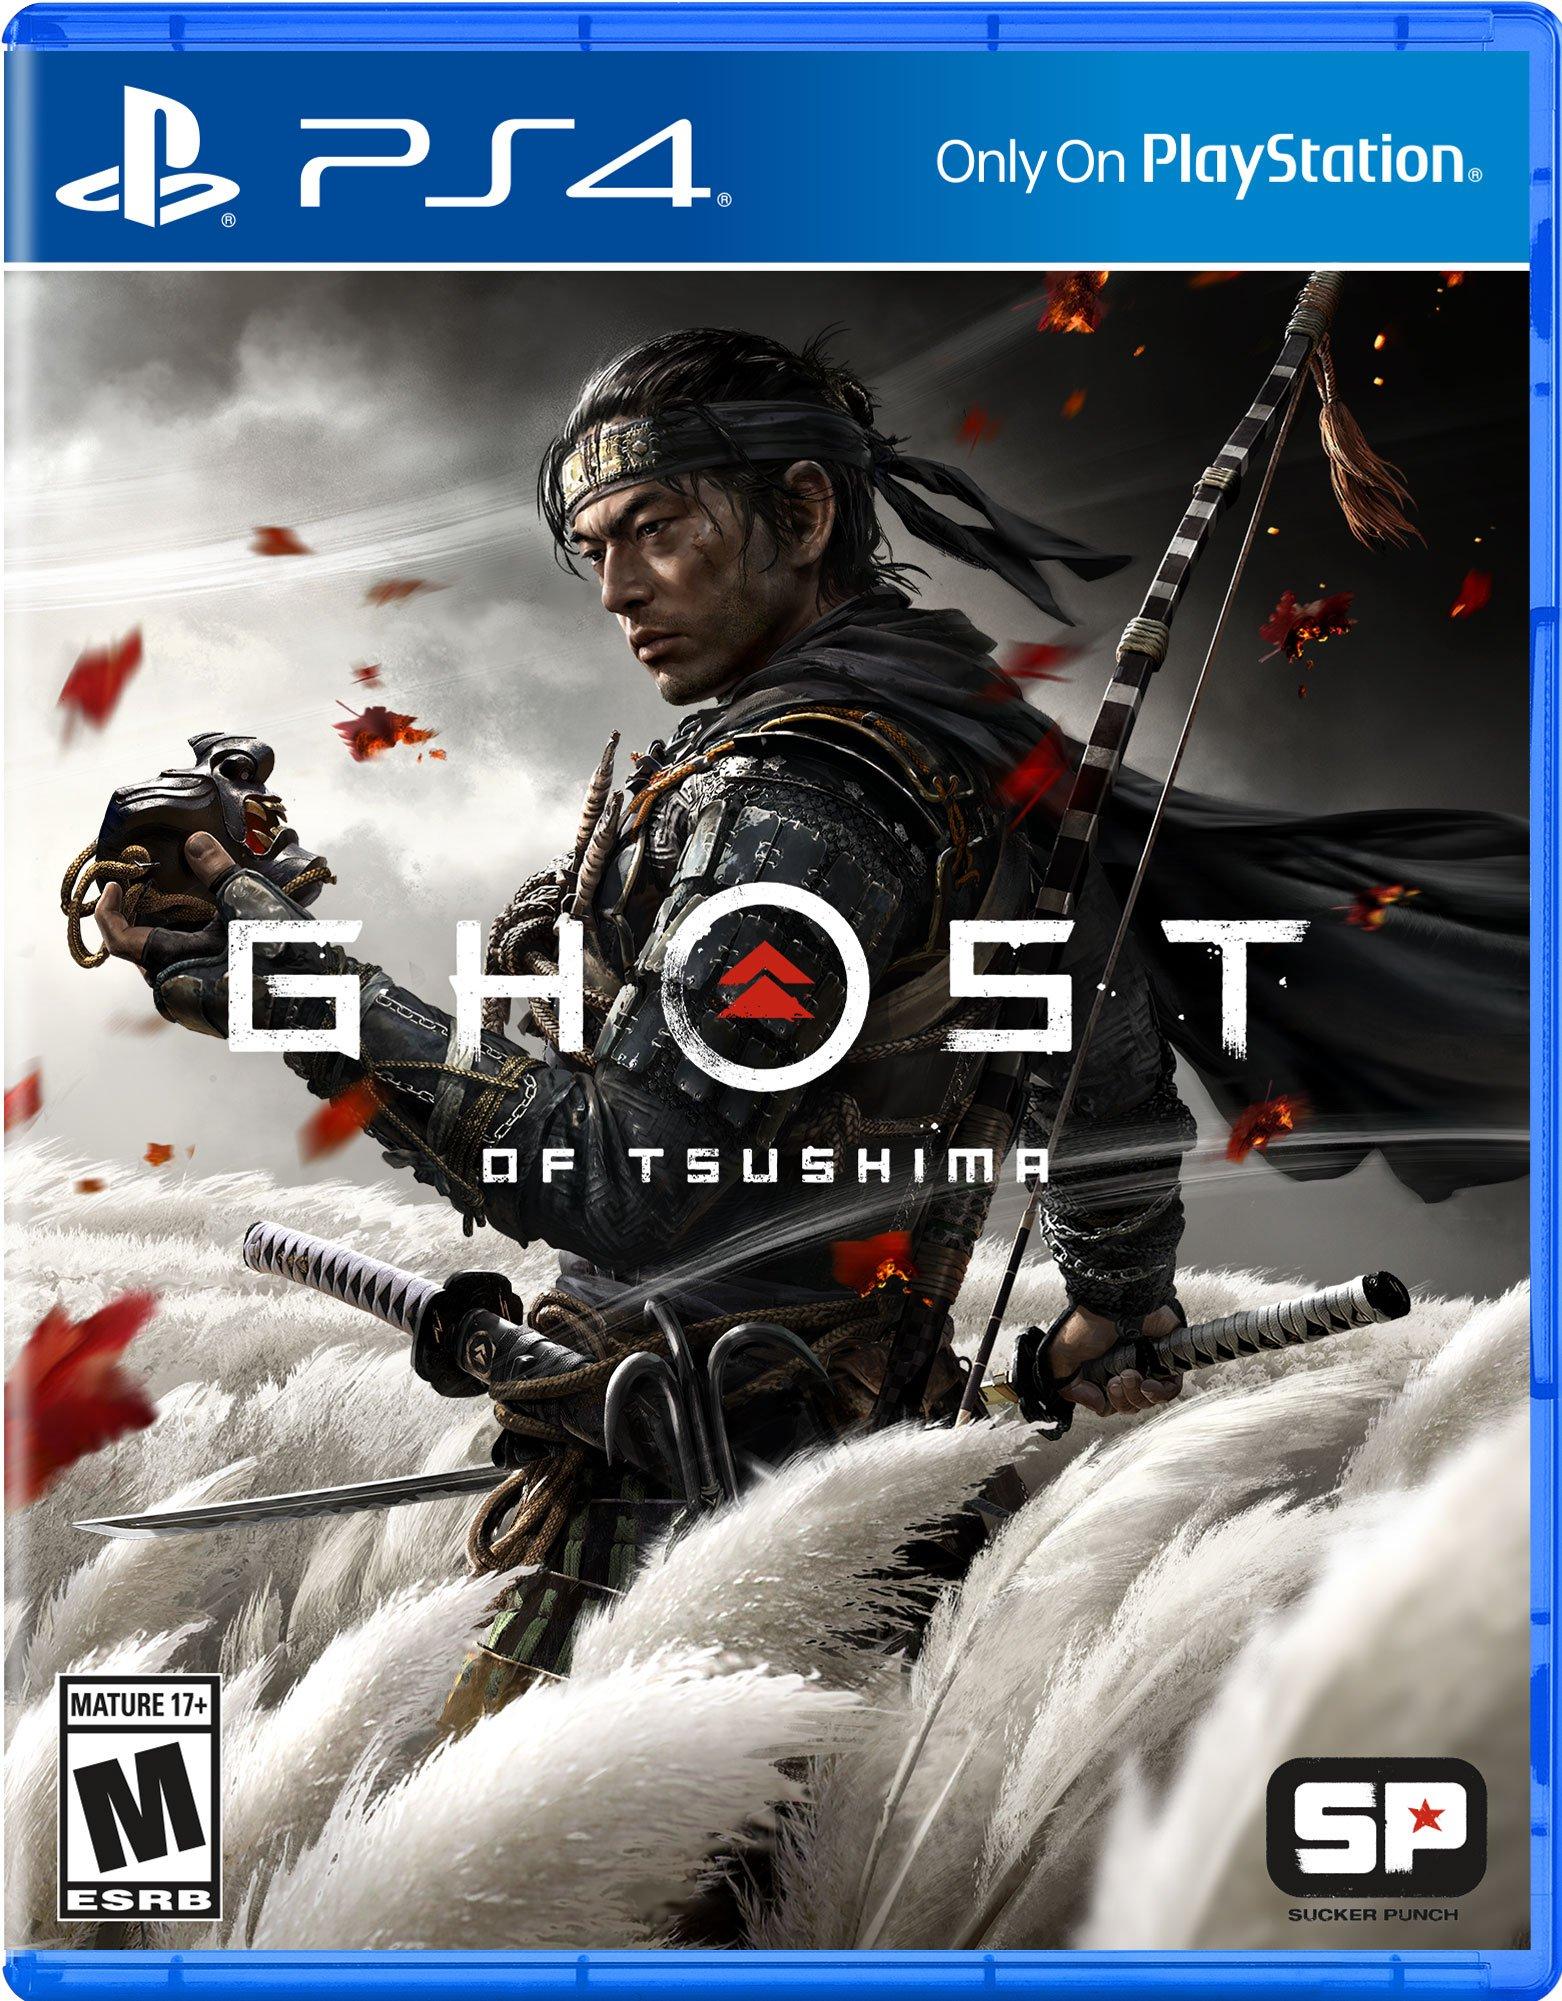 Ghost of Tsushima - PlayStation 4, PlayStation 4